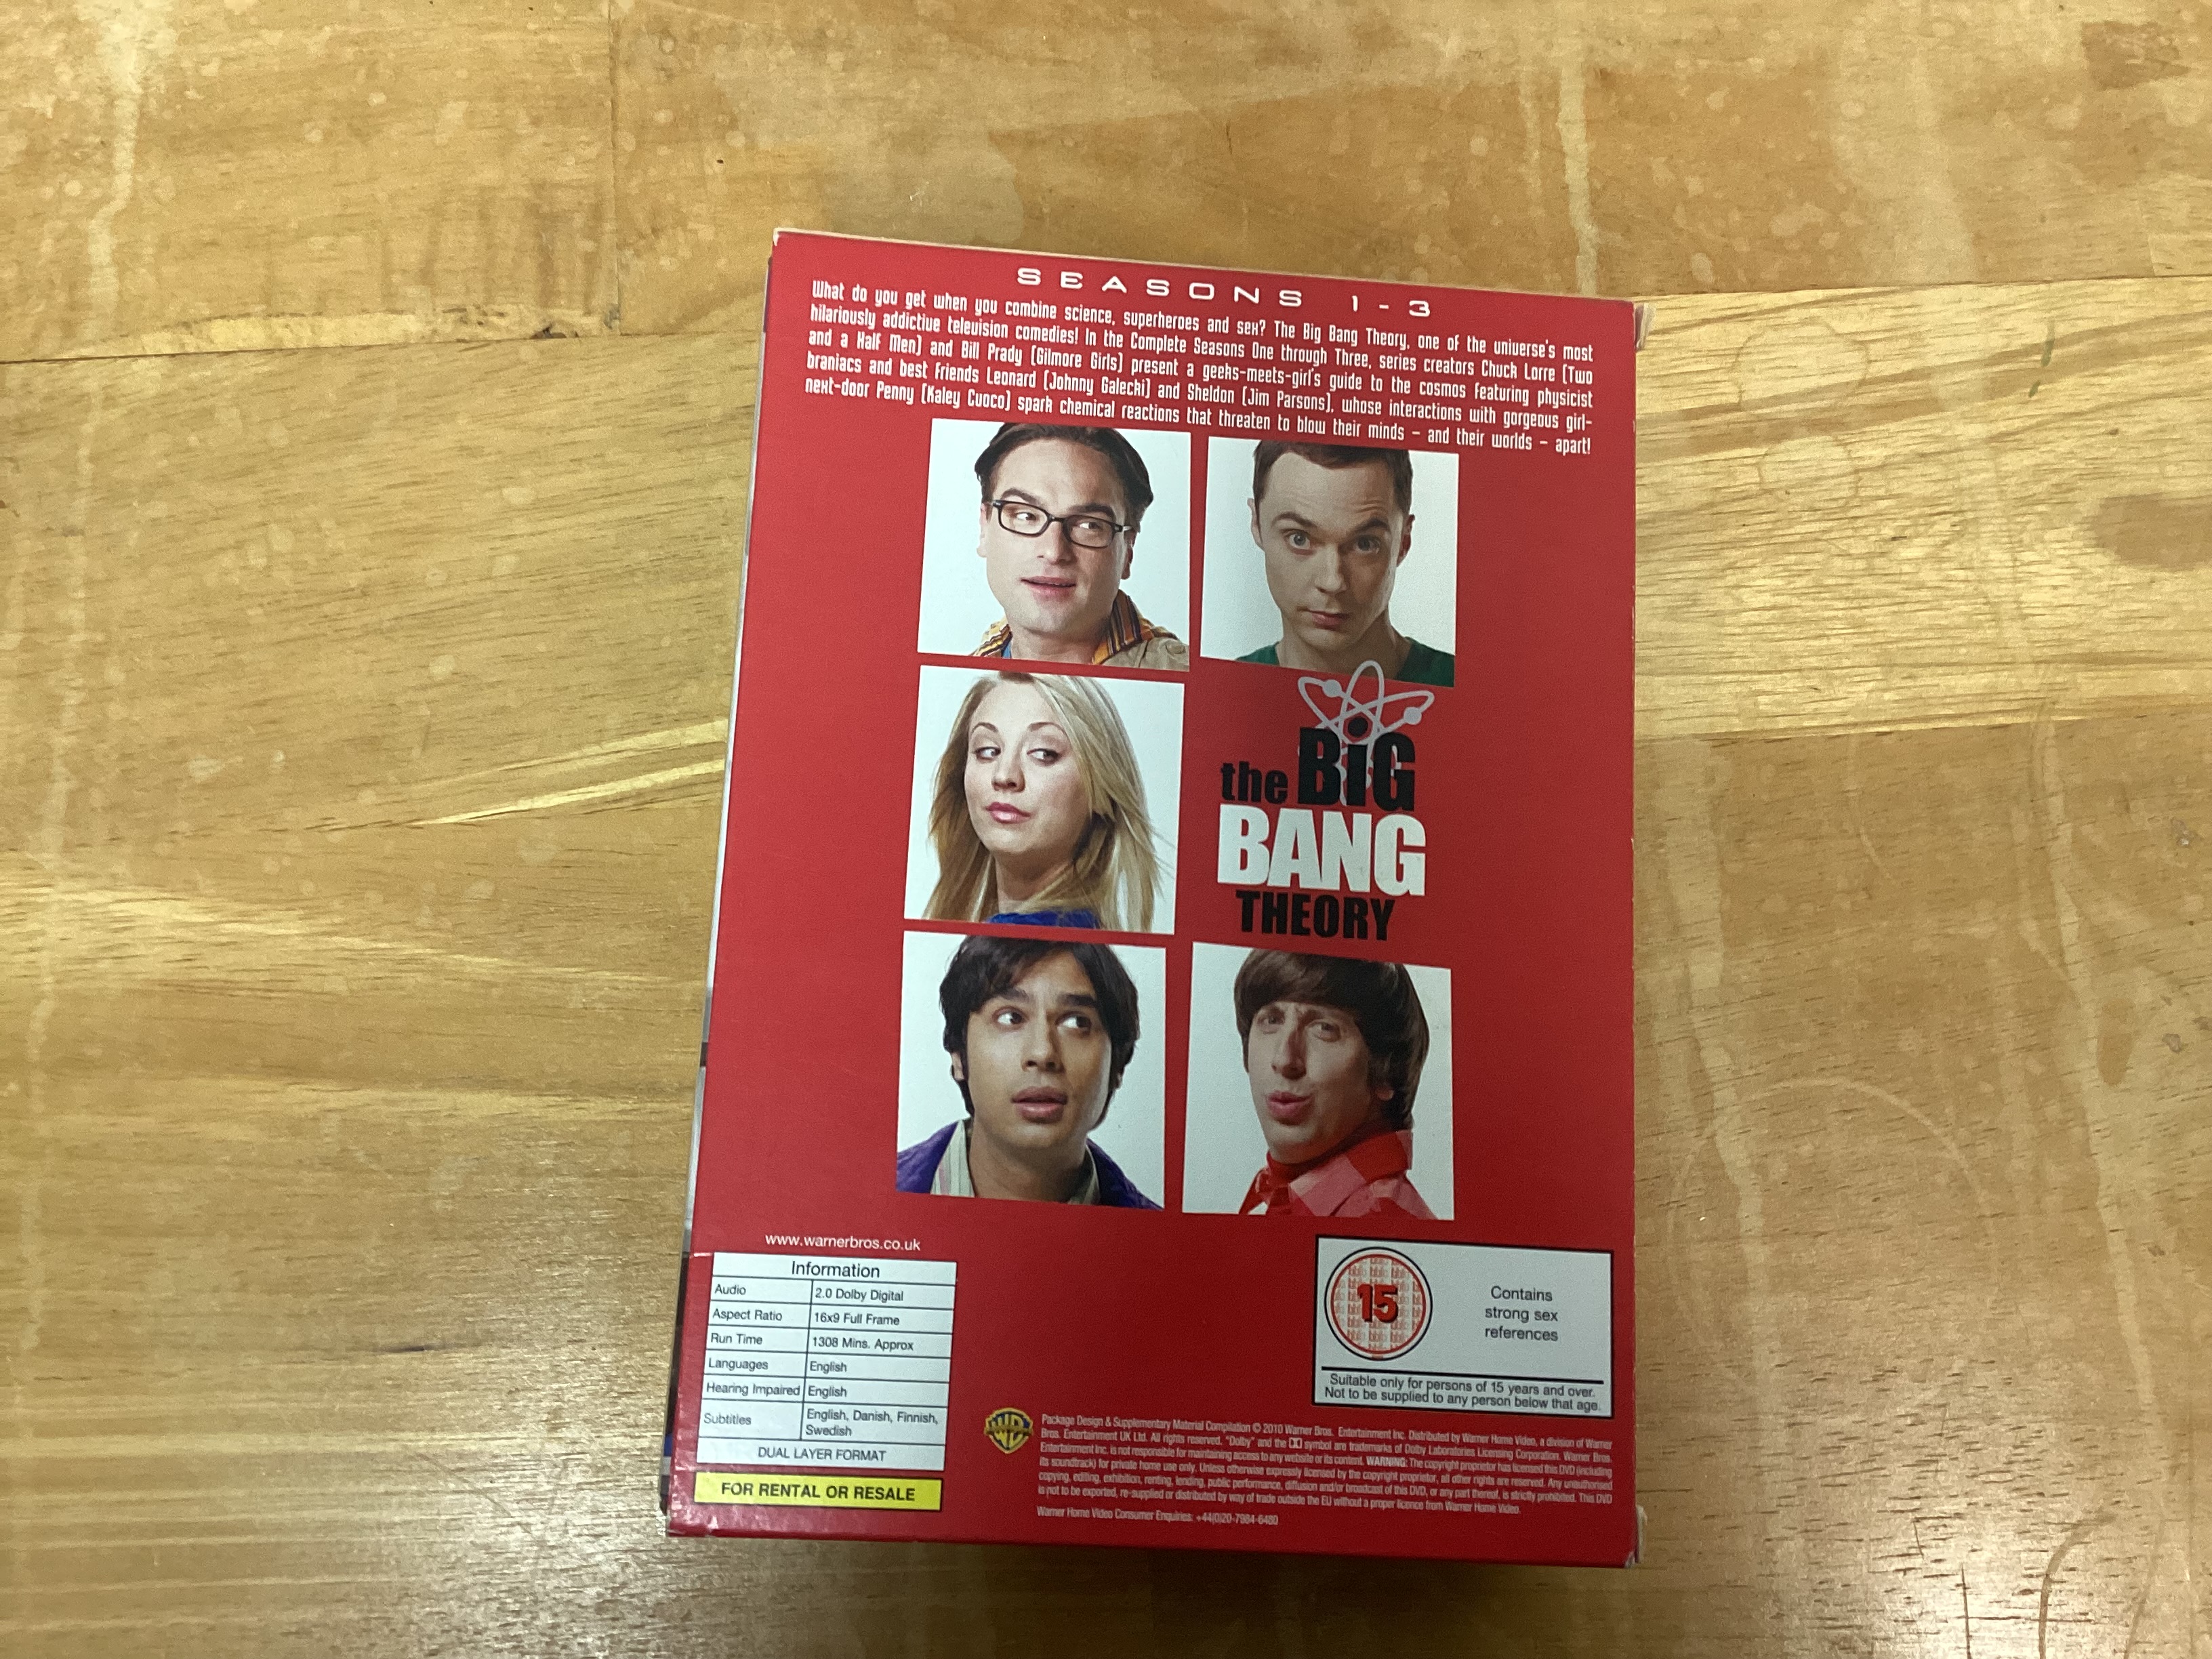 The Big Bang Theory Seasons 1 -3